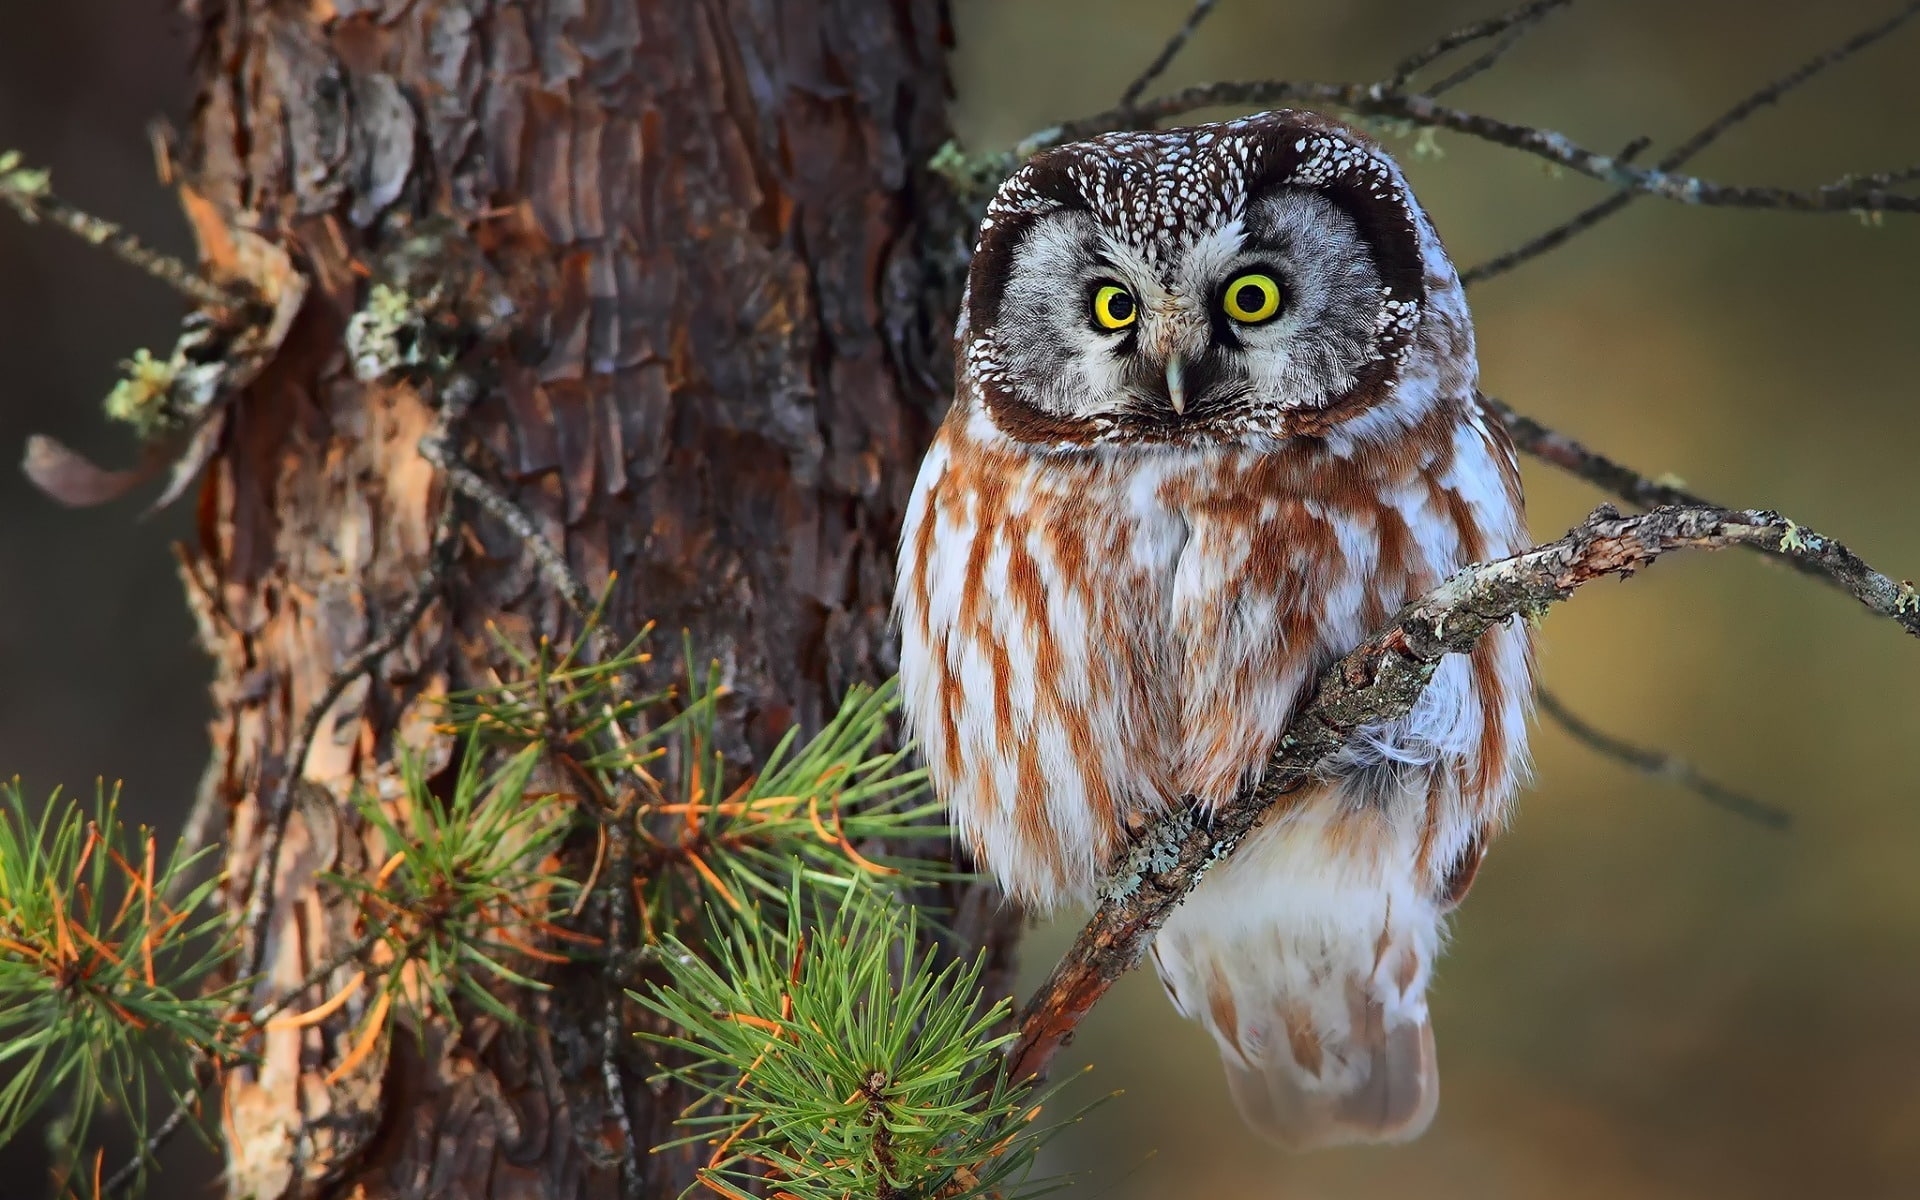 Cute Little Owl, tree